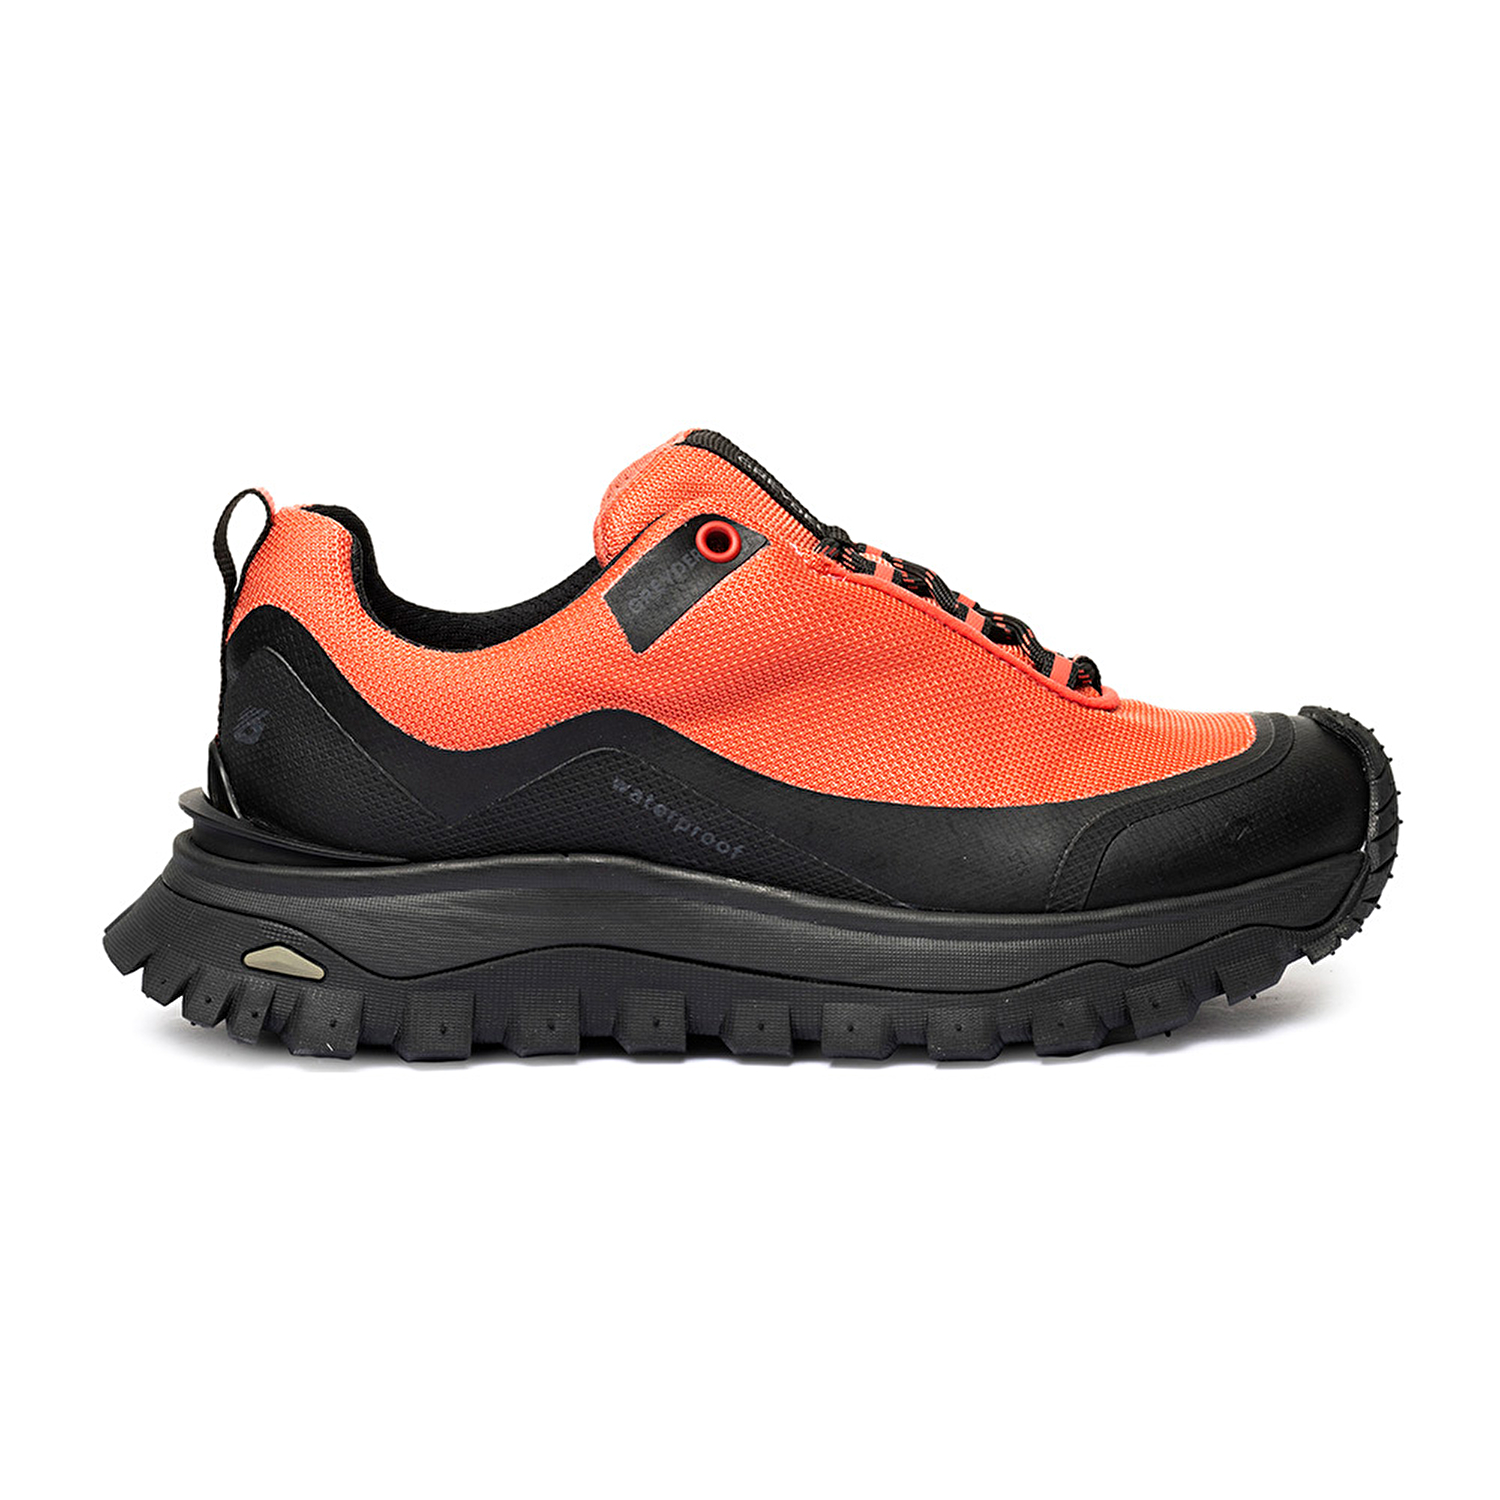 Kadın Pembe Su Geçirmez Outdoor Ayakkabı 3K2GA16357-1